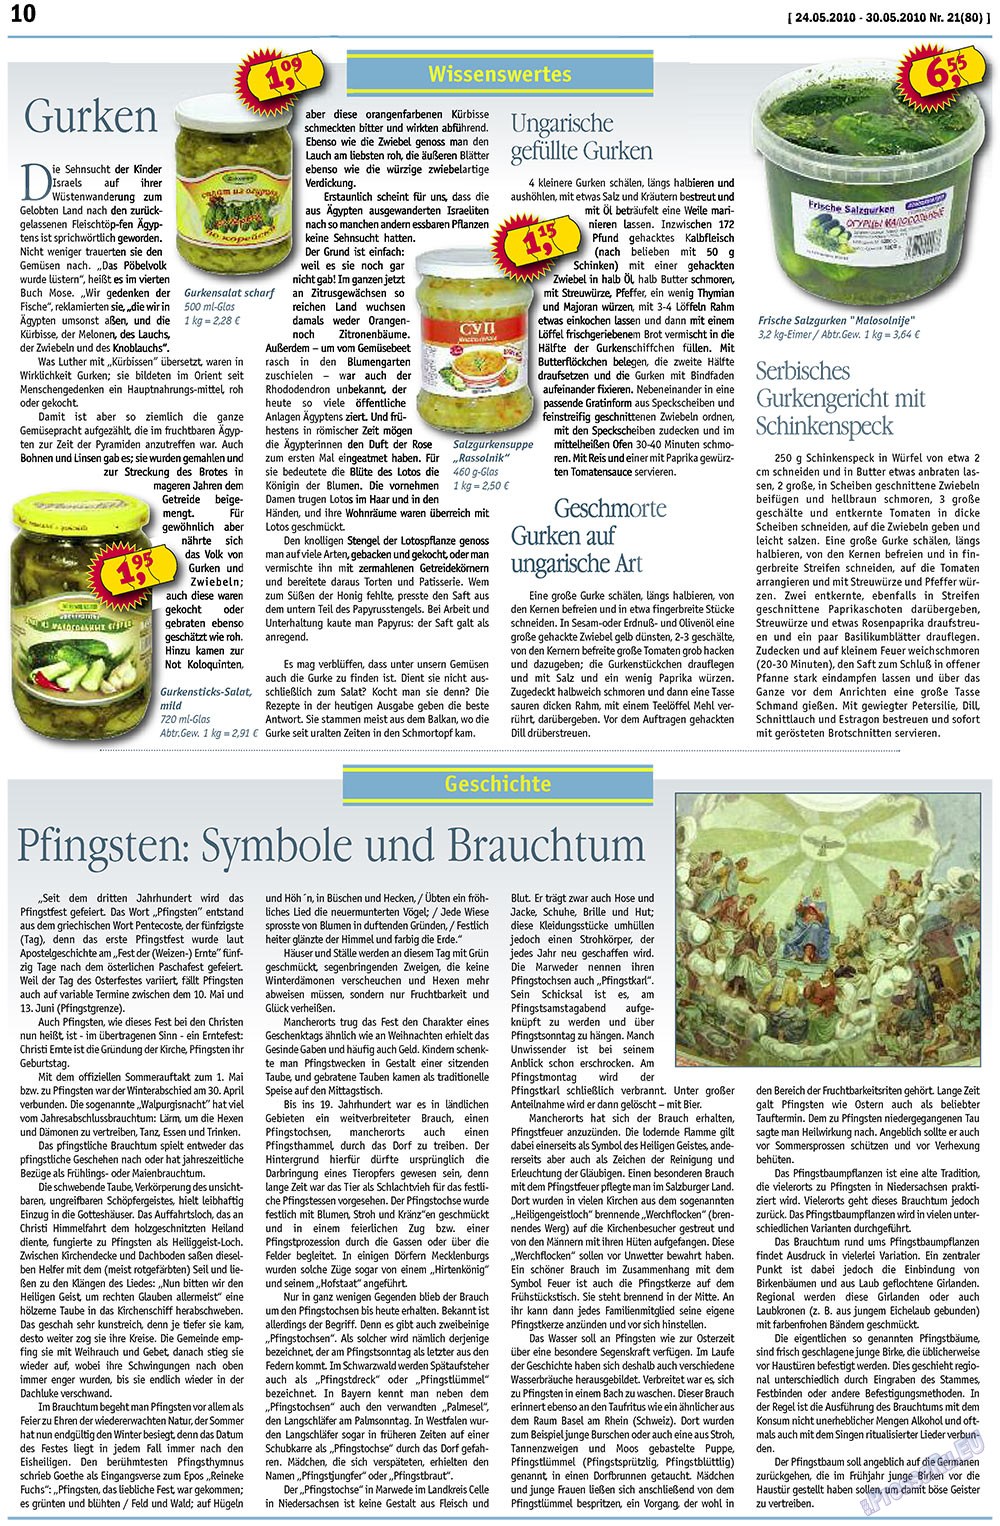 MIX-Markt Zeitung, газета. 2010 №21 стр.10